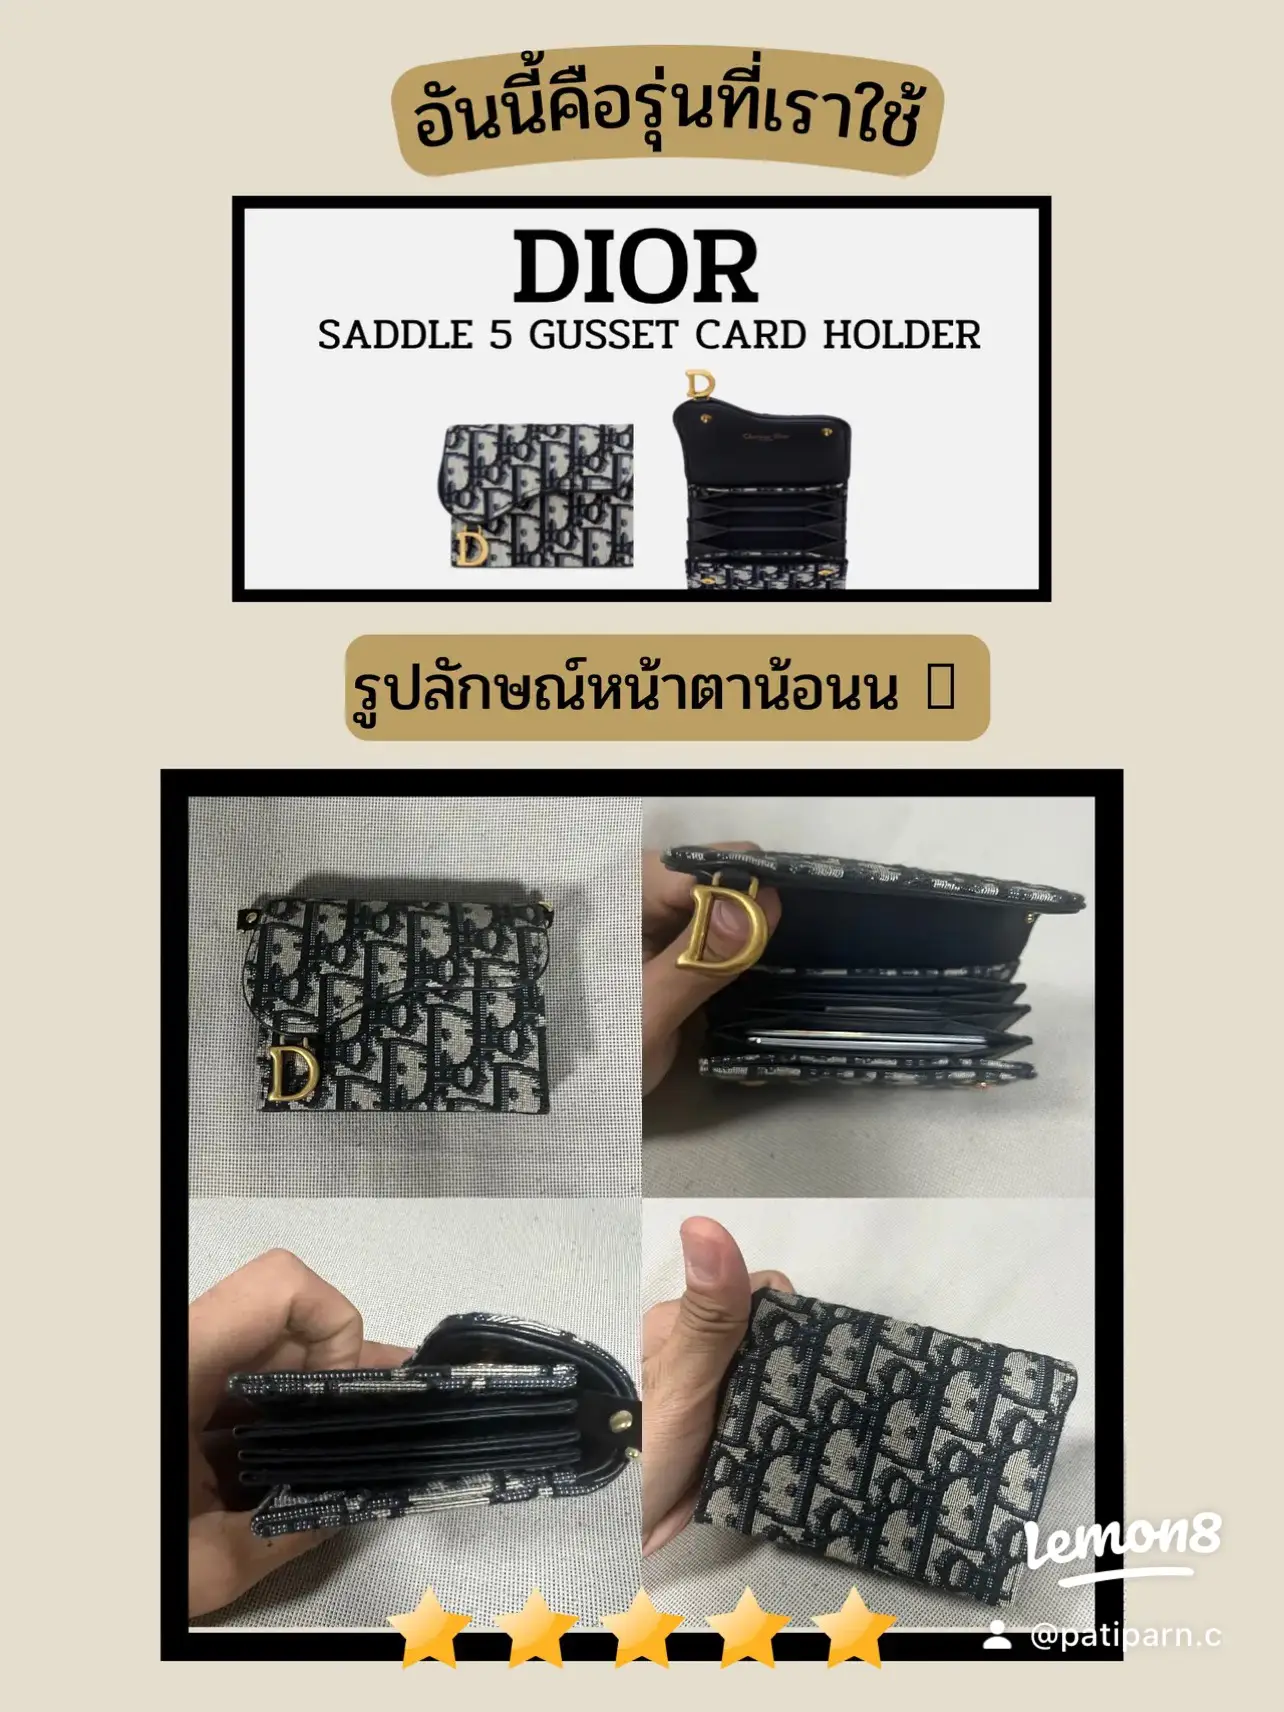 รูปภาพของ รีวิวหมดเปลือก Dior card holder ใช้แล้วดีจริงหรือแค่กระแส ? (2)